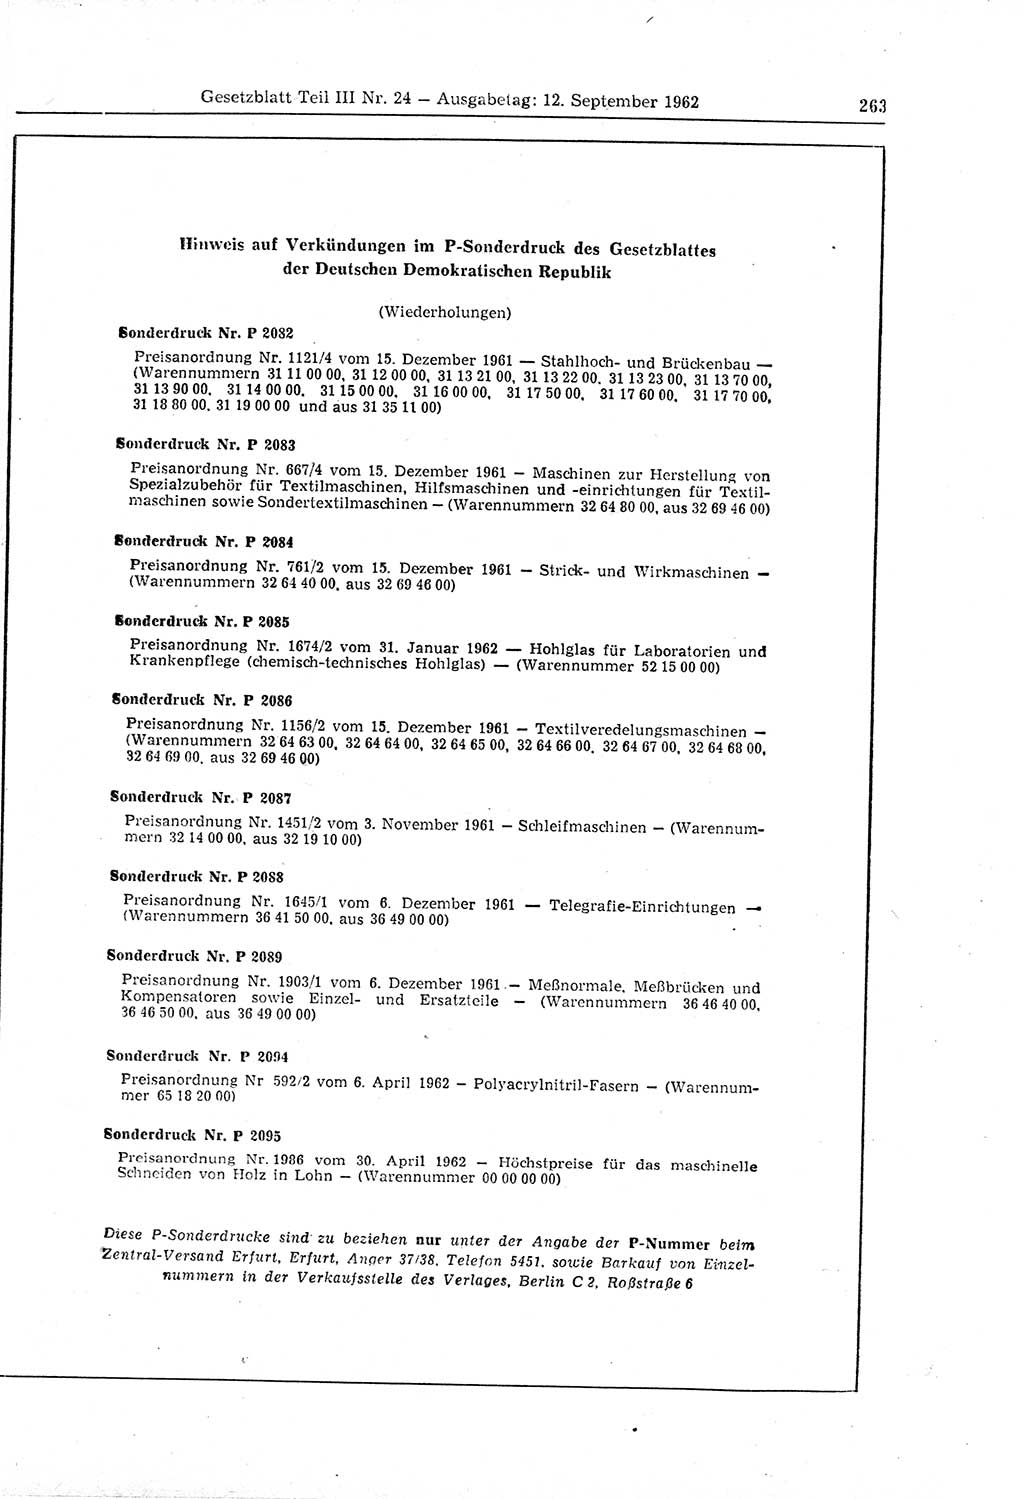 Gesetzblatt (GBl.) der Deutschen Demokratischen Republik (DDR) Teil ⅠⅠⅠ 1962, Seite 263 (GBl. DDR ⅠⅠⅠ 1962, S. 263)